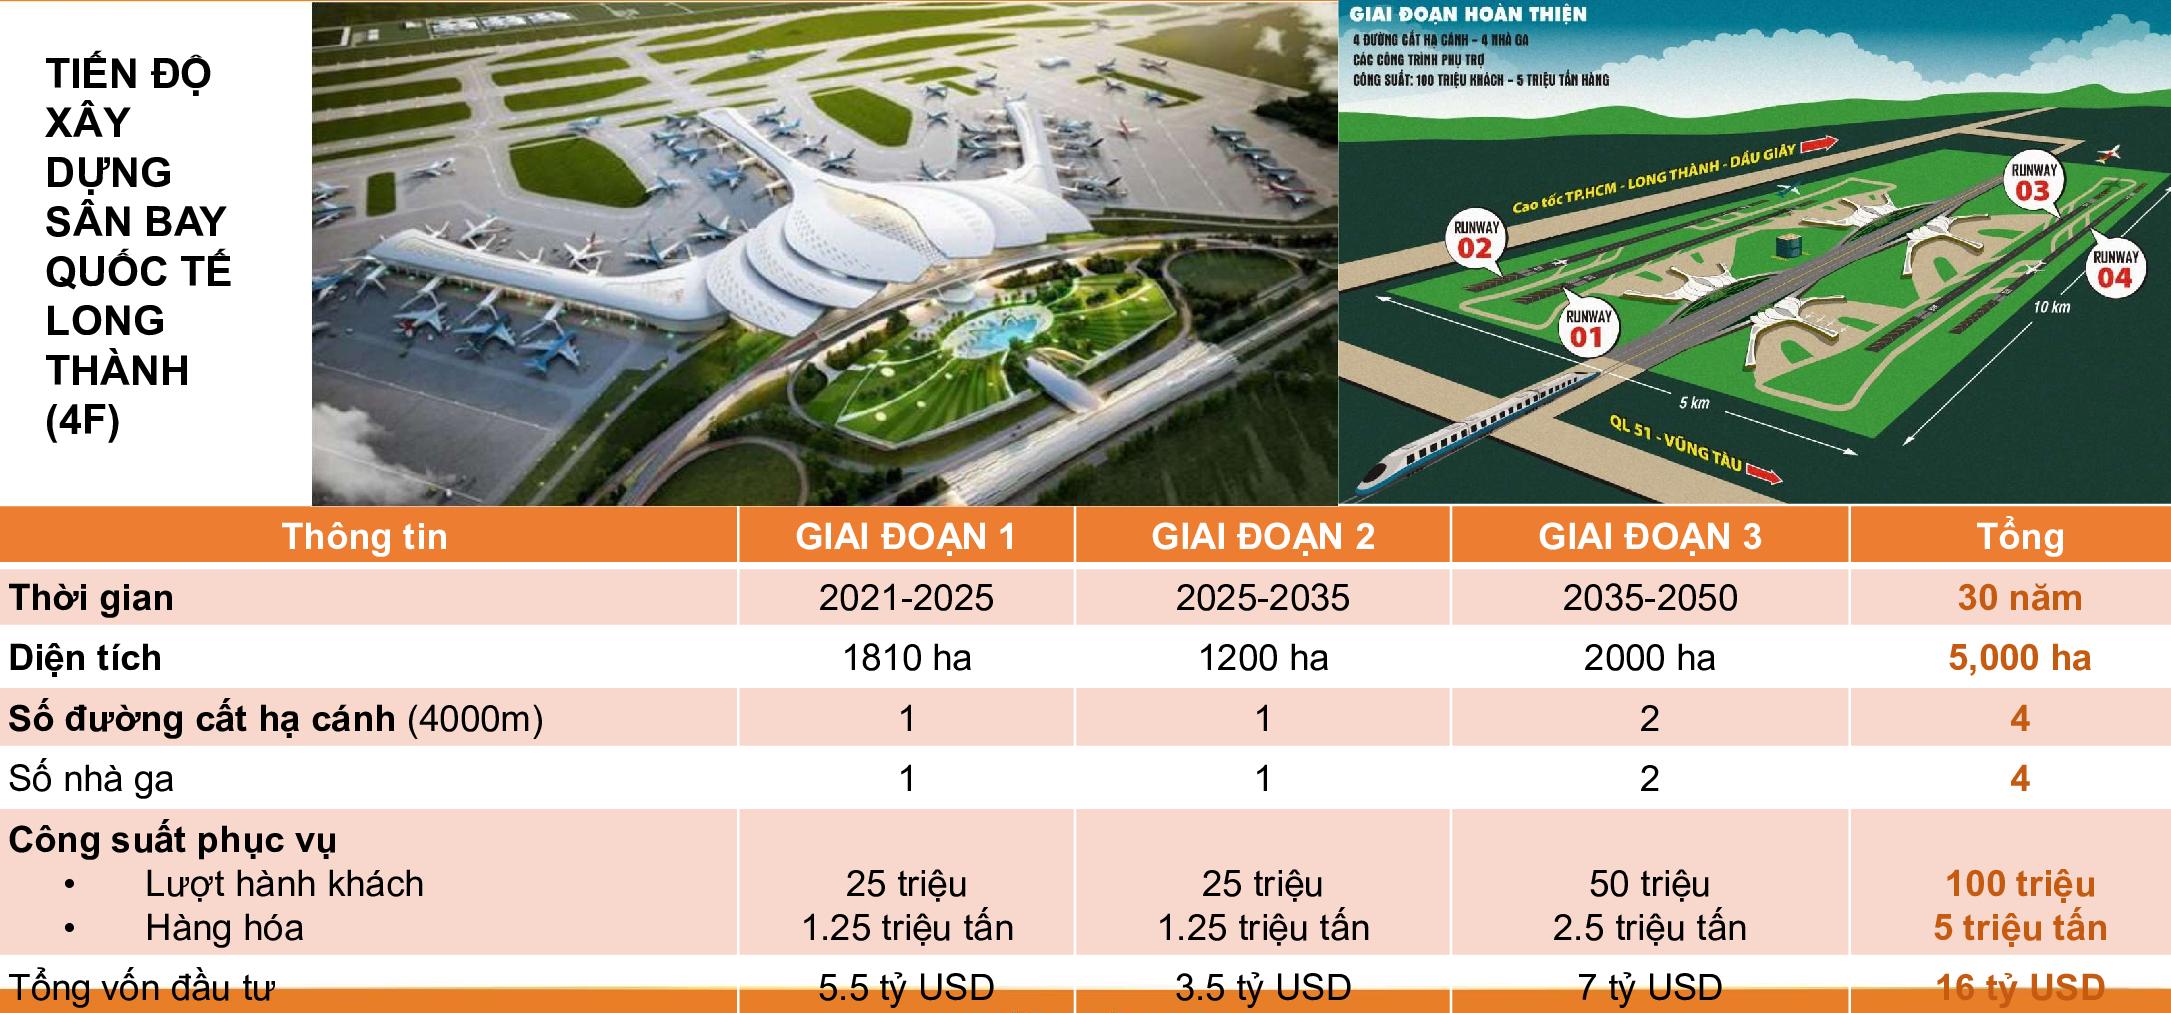 Tiến độ xây dựng sân bay quốc tế Long Thành (4F) 